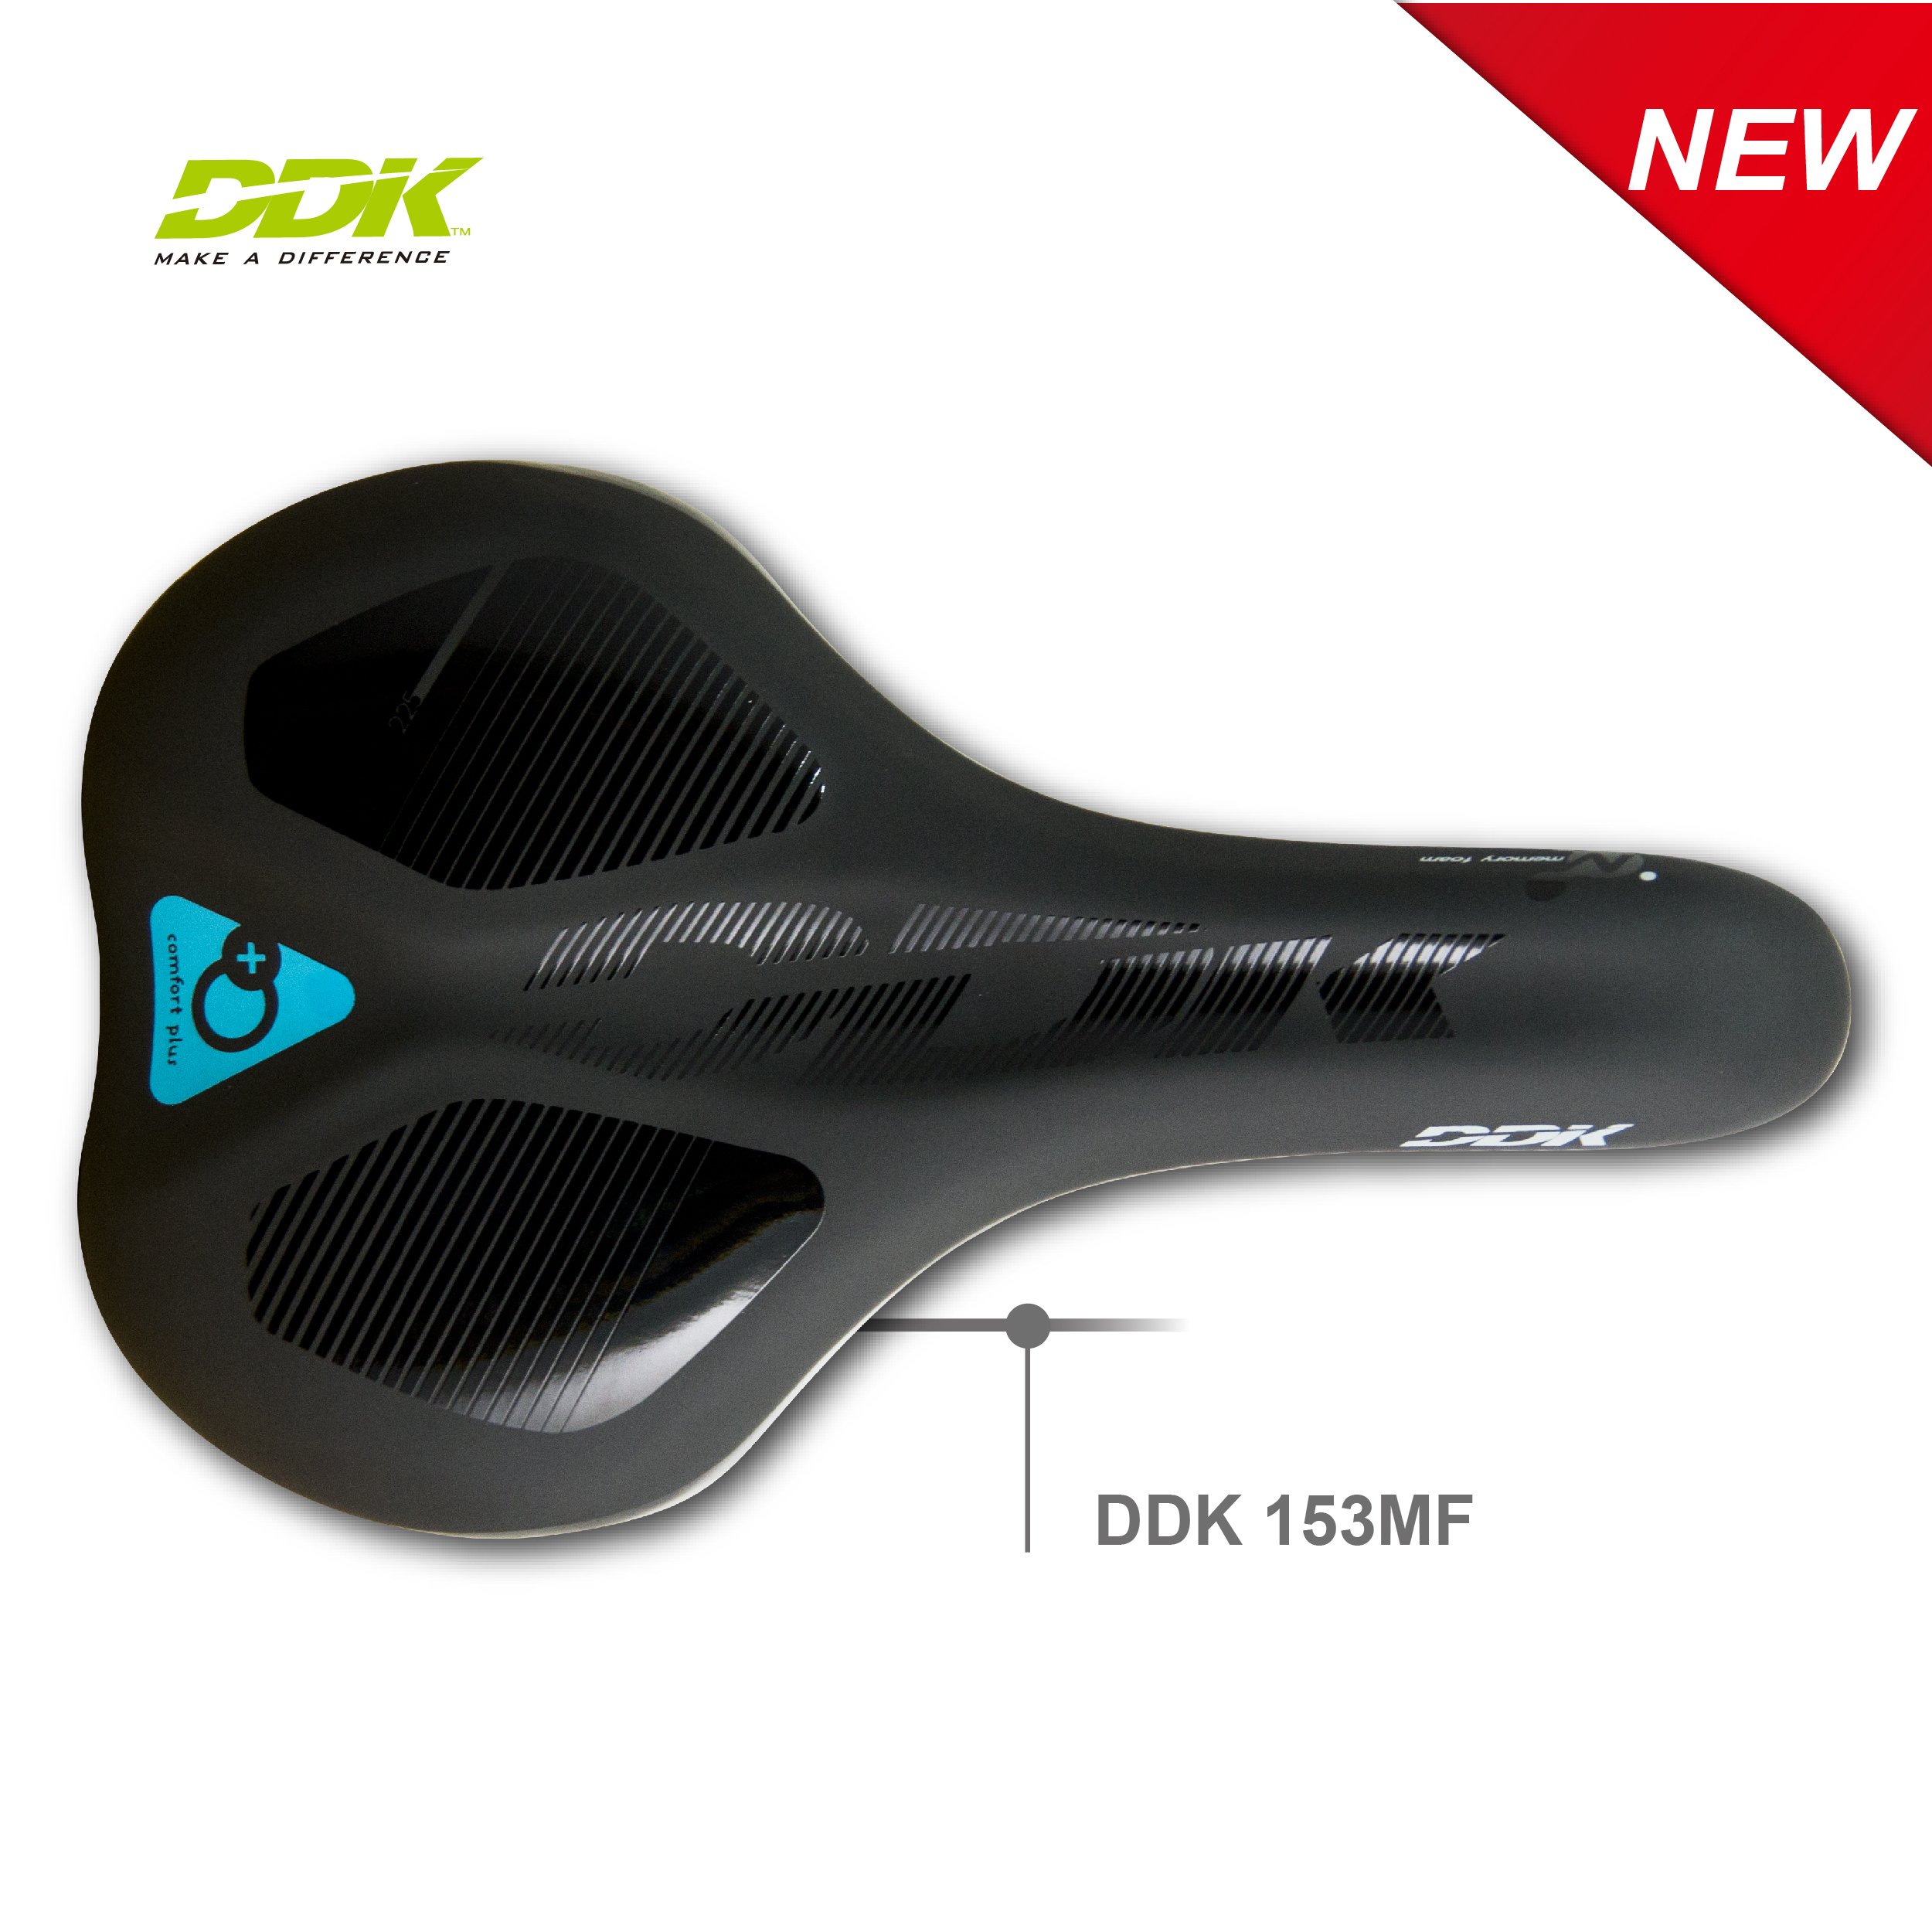 DDK-D153MF